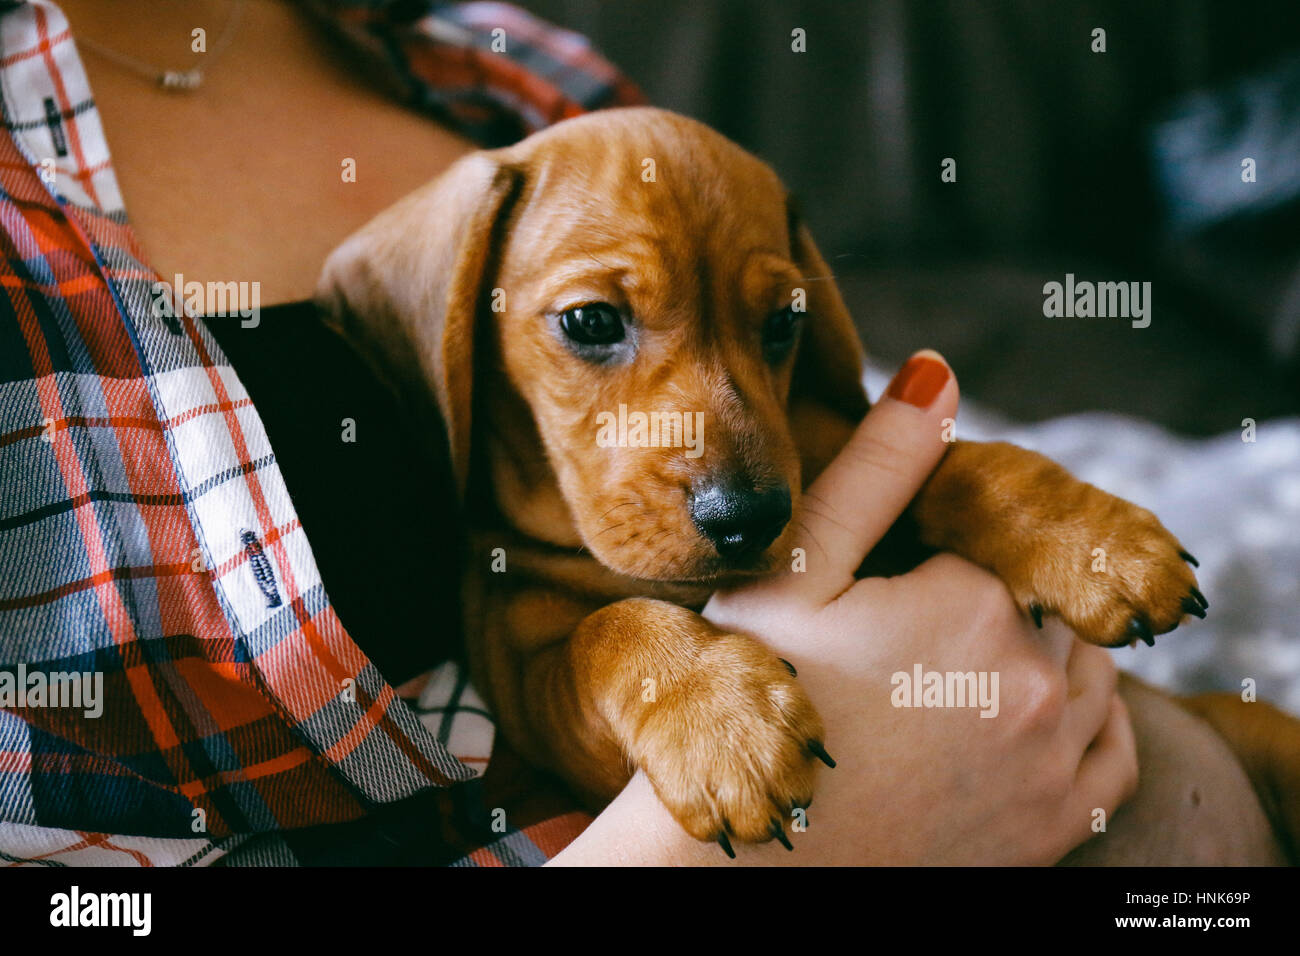 8 semaines des cheveux lisses brown dachshund puppy se reposer en toute sécurité dans les mains de sa femme propriétaire qui porte une chemise à carreaux colorés Banque D'Images